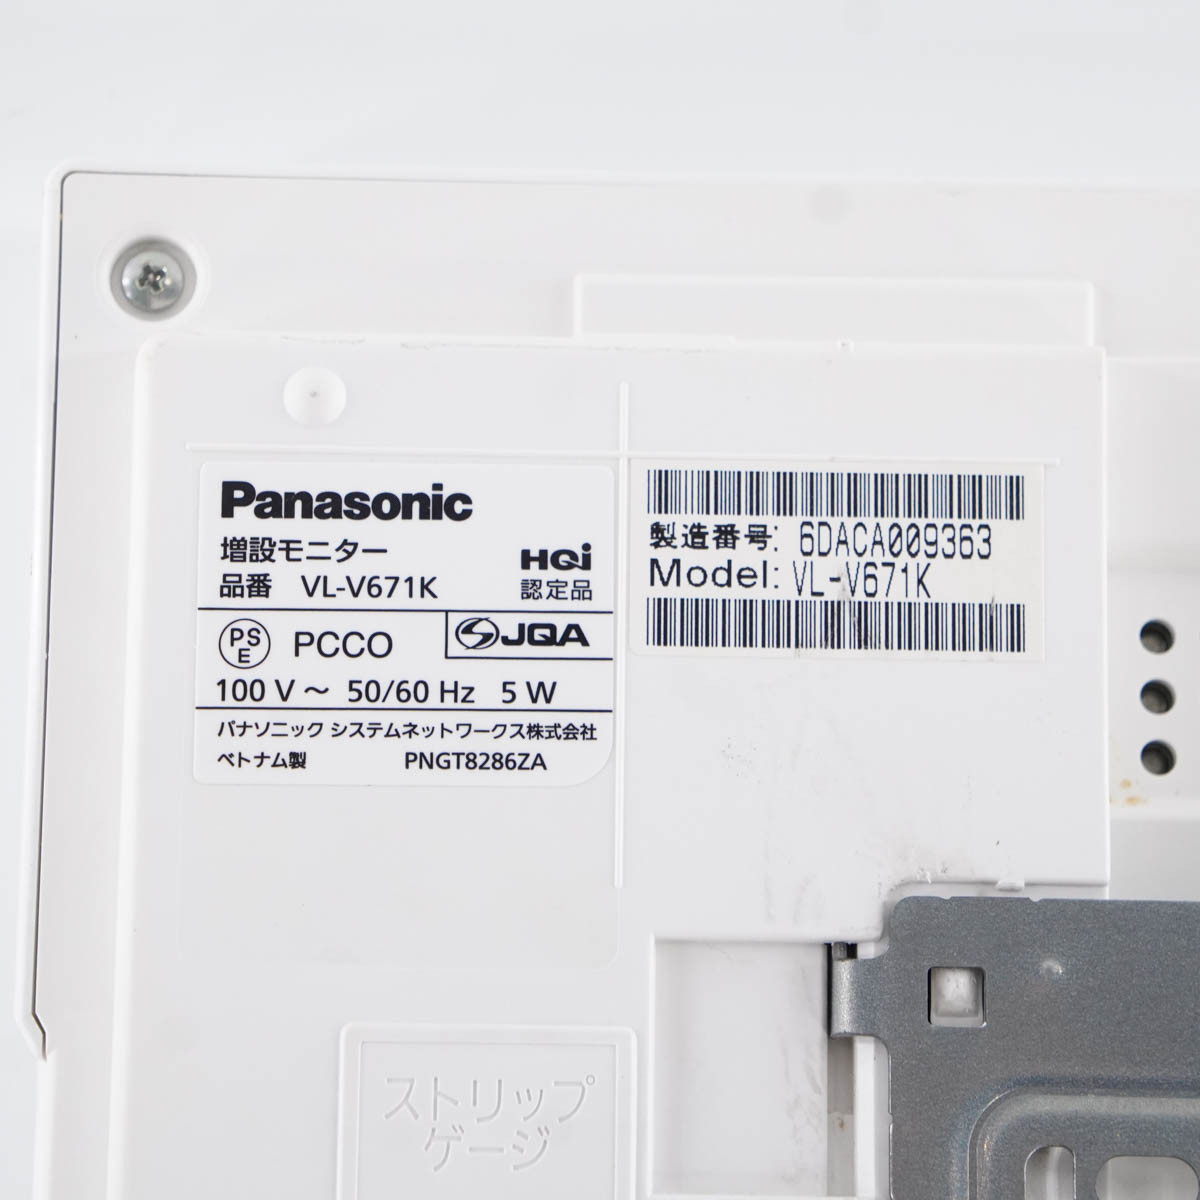 パナソニック(Panasonic) 増設モニター VL-V671K - 1